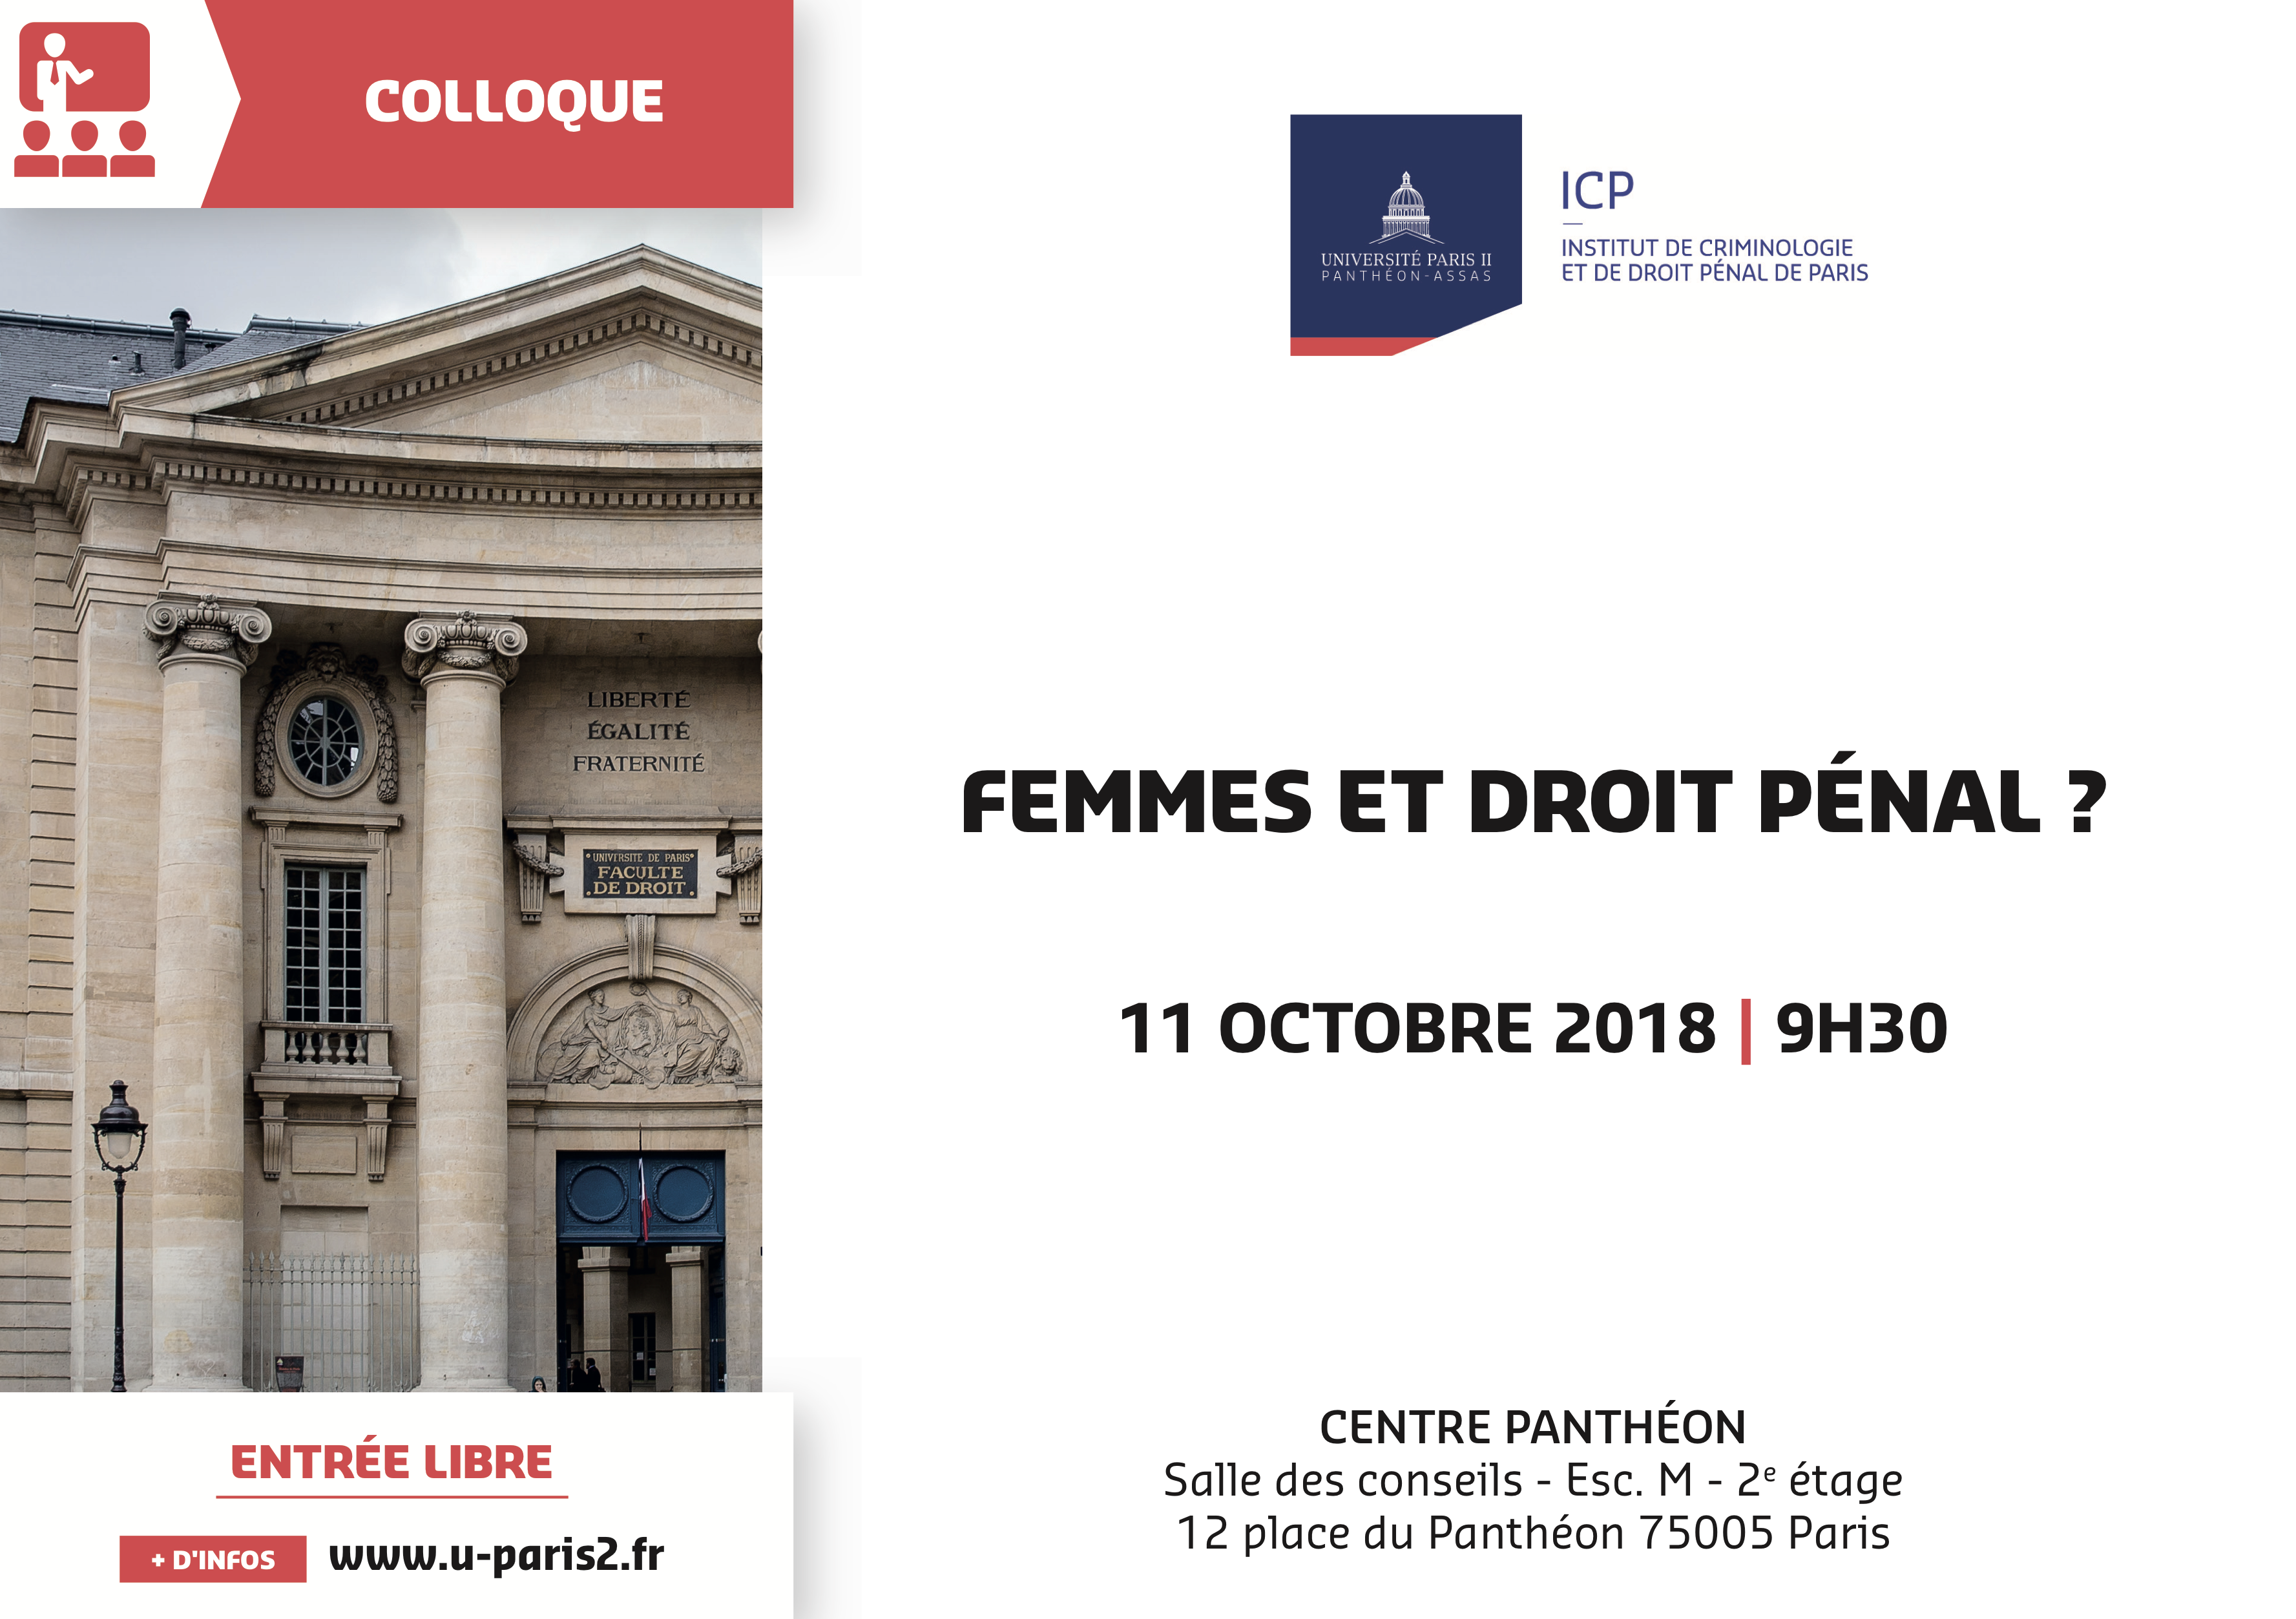 Colloque du 11 octobre, Femmes et droit pénal, organisé par l'Institut de criminologie de droit pénal de paris